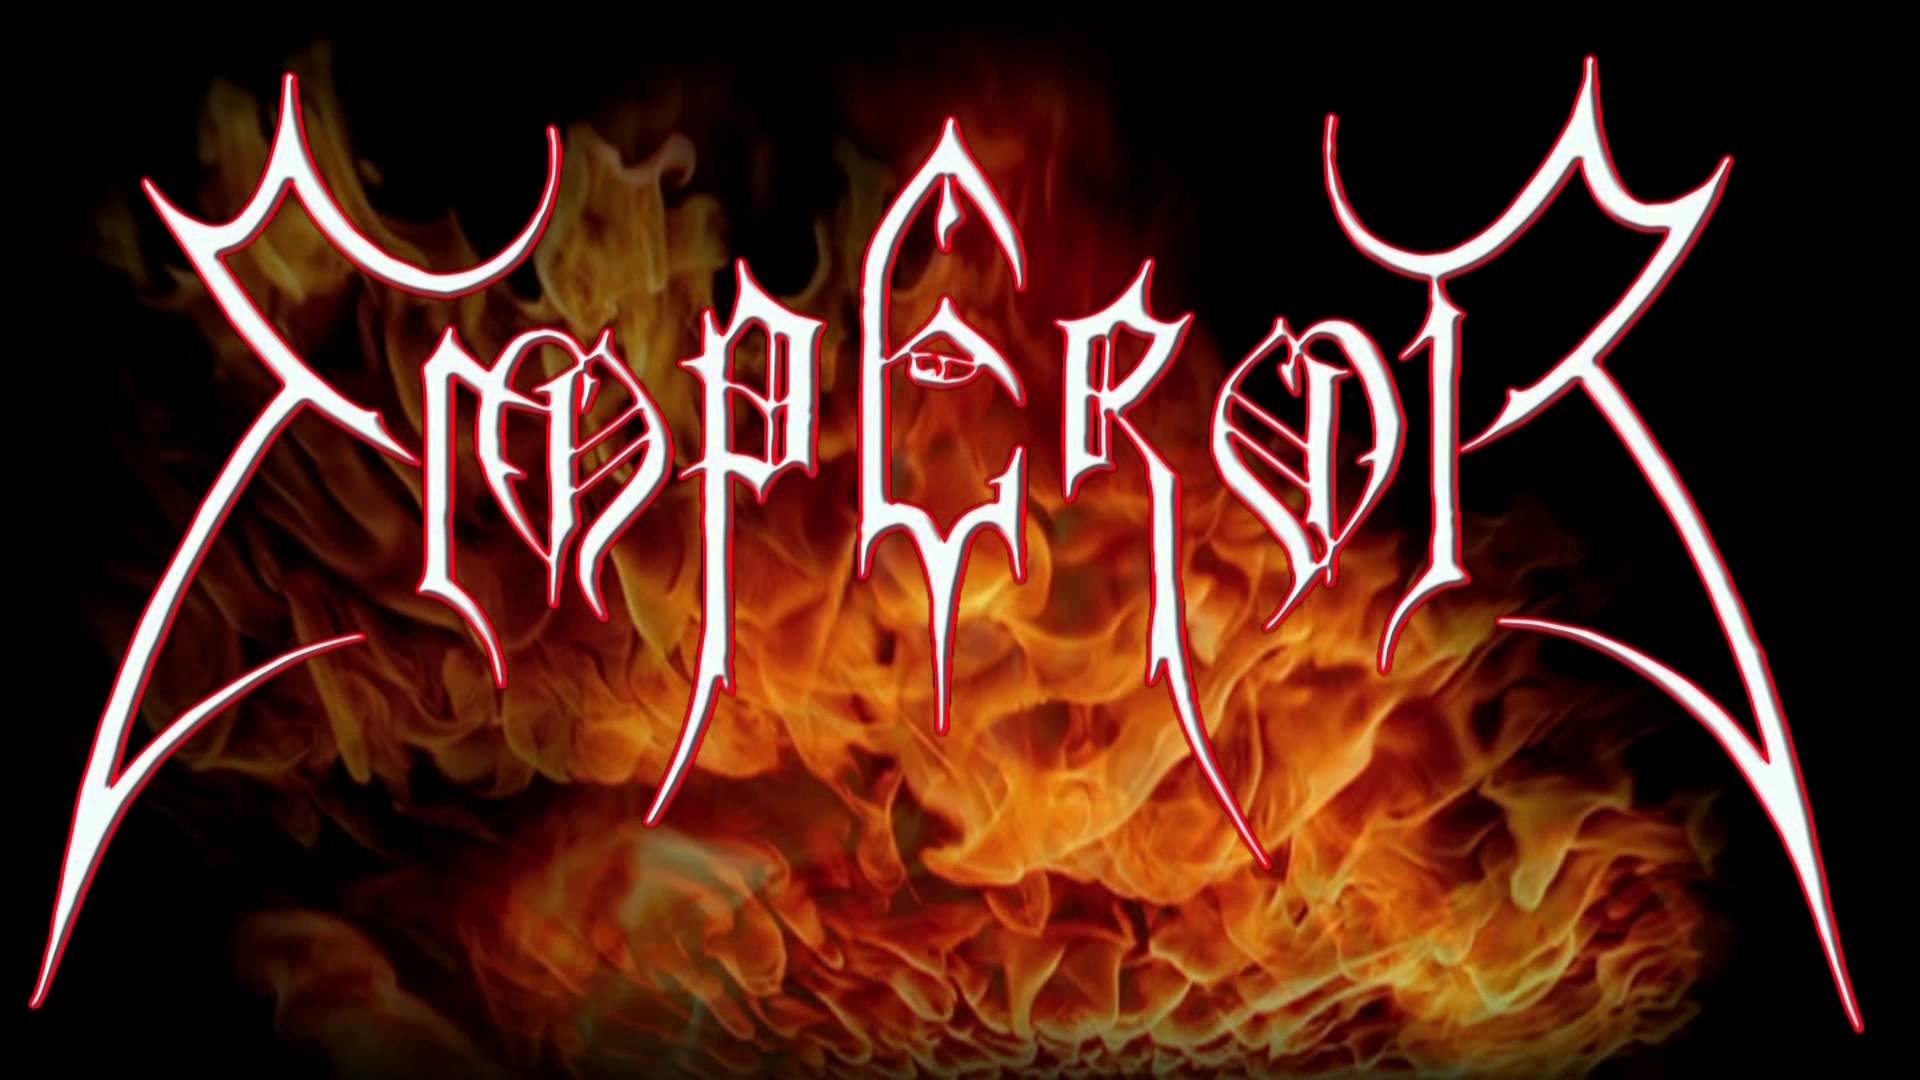 emperor band logo